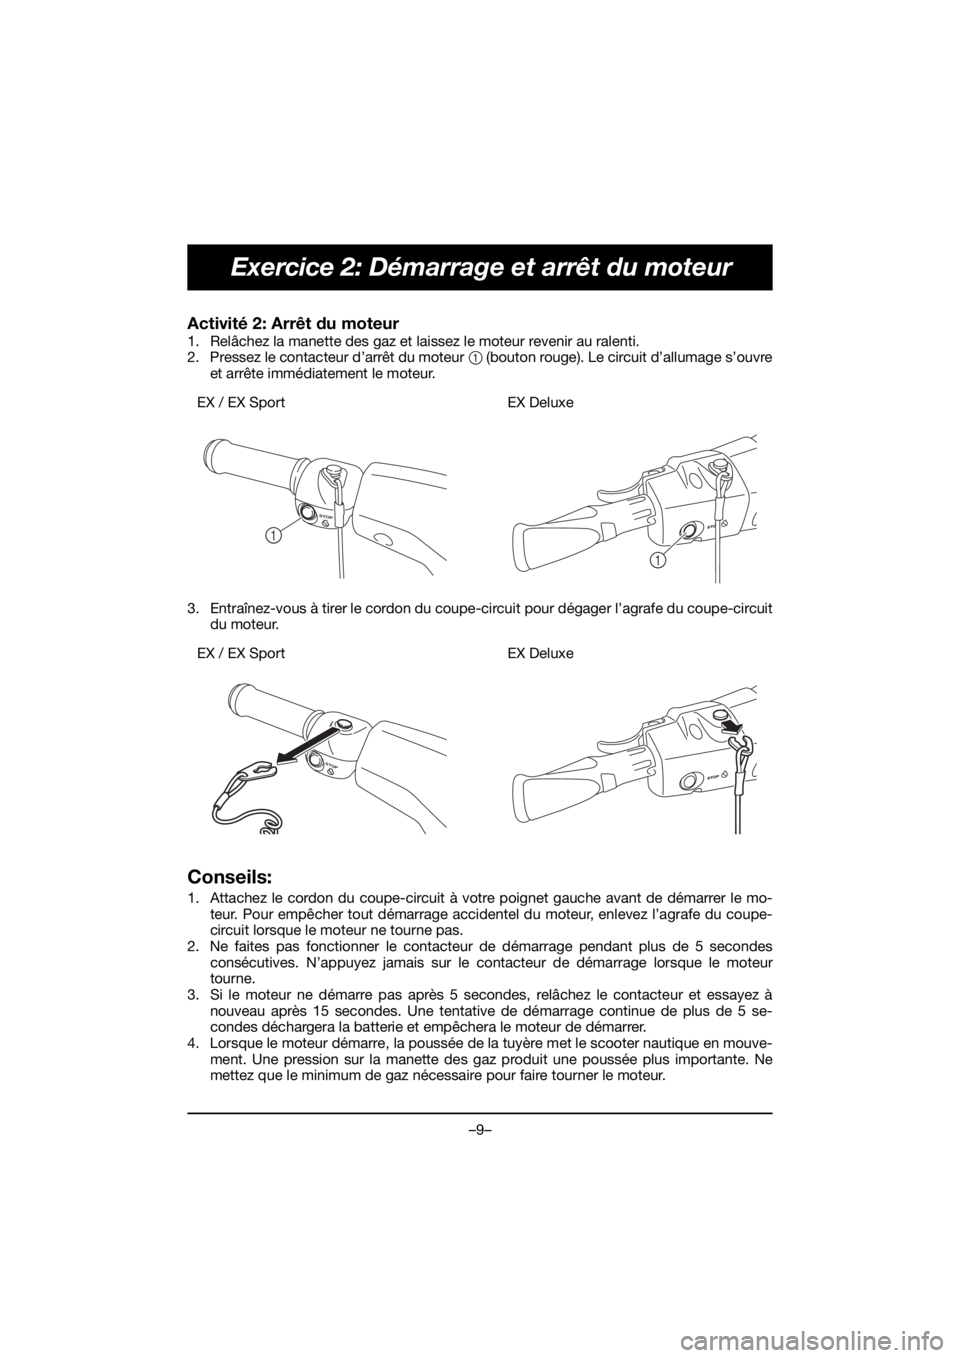 YAMAHA EX 2020  Manual de utilização (in Portuguese) –9–
Exercice 2: Démarrage et arrêt du moteur
Activité 2: Arrêt du moteur 
1. Relâchez la manette des gaz et laissez le moteur revenir au ralenti. 
2. Pressez le contacteur d’arrêt du moteu